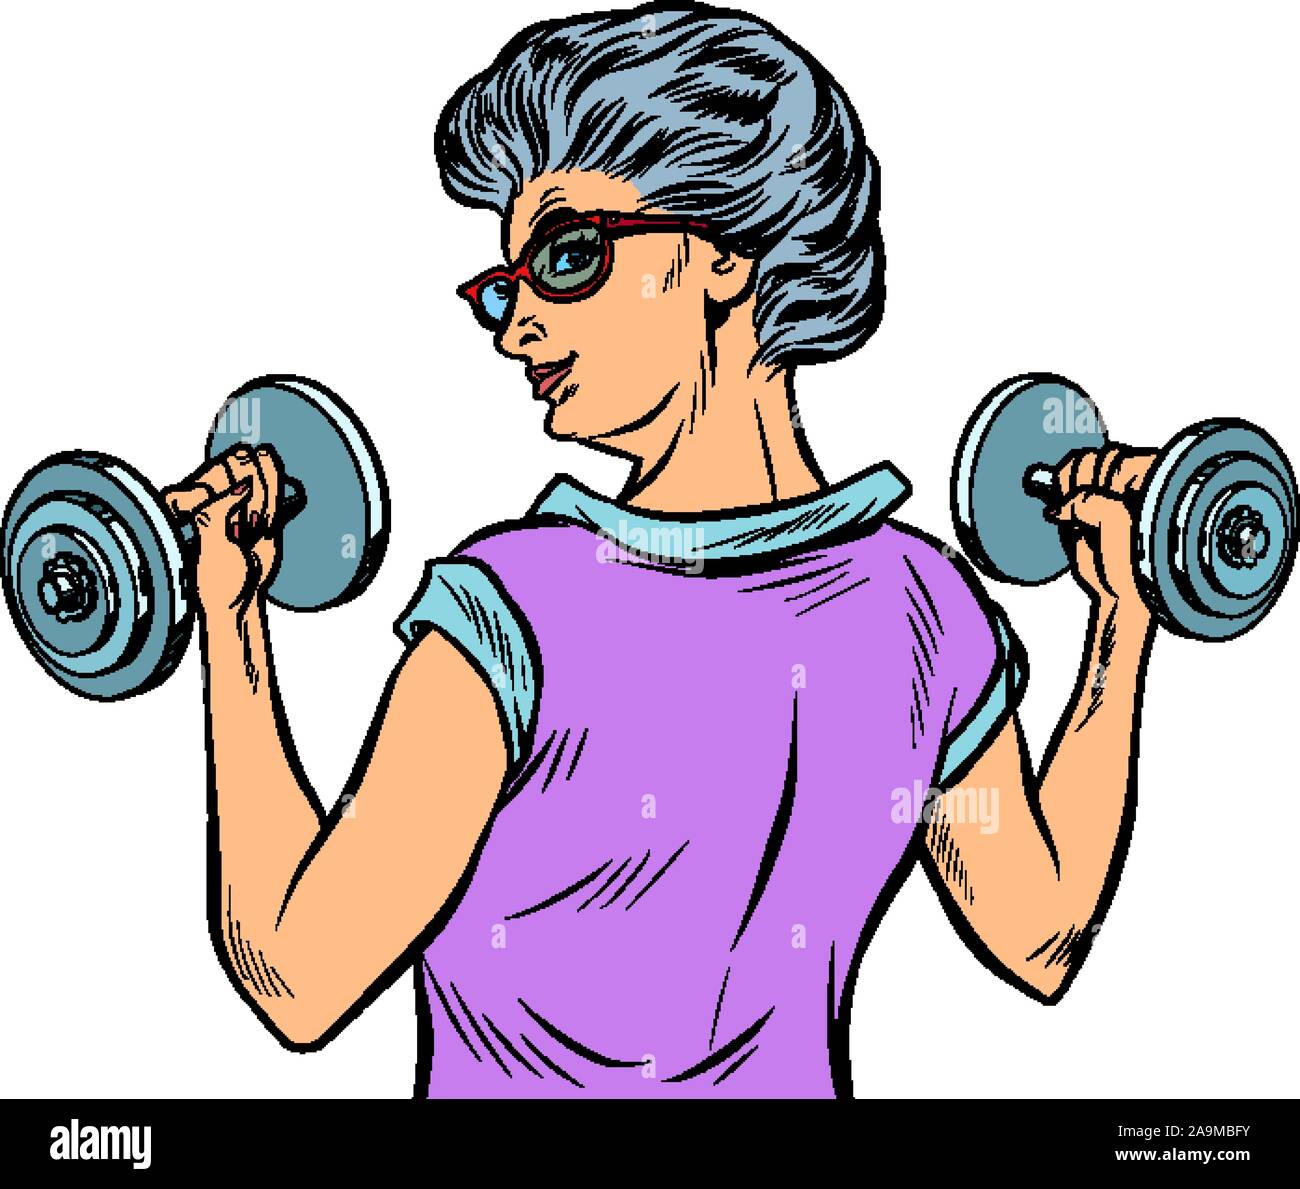 Mancuernas fitness actividad deportiva mujer abuela anciana pensionista Ilustración del Vector